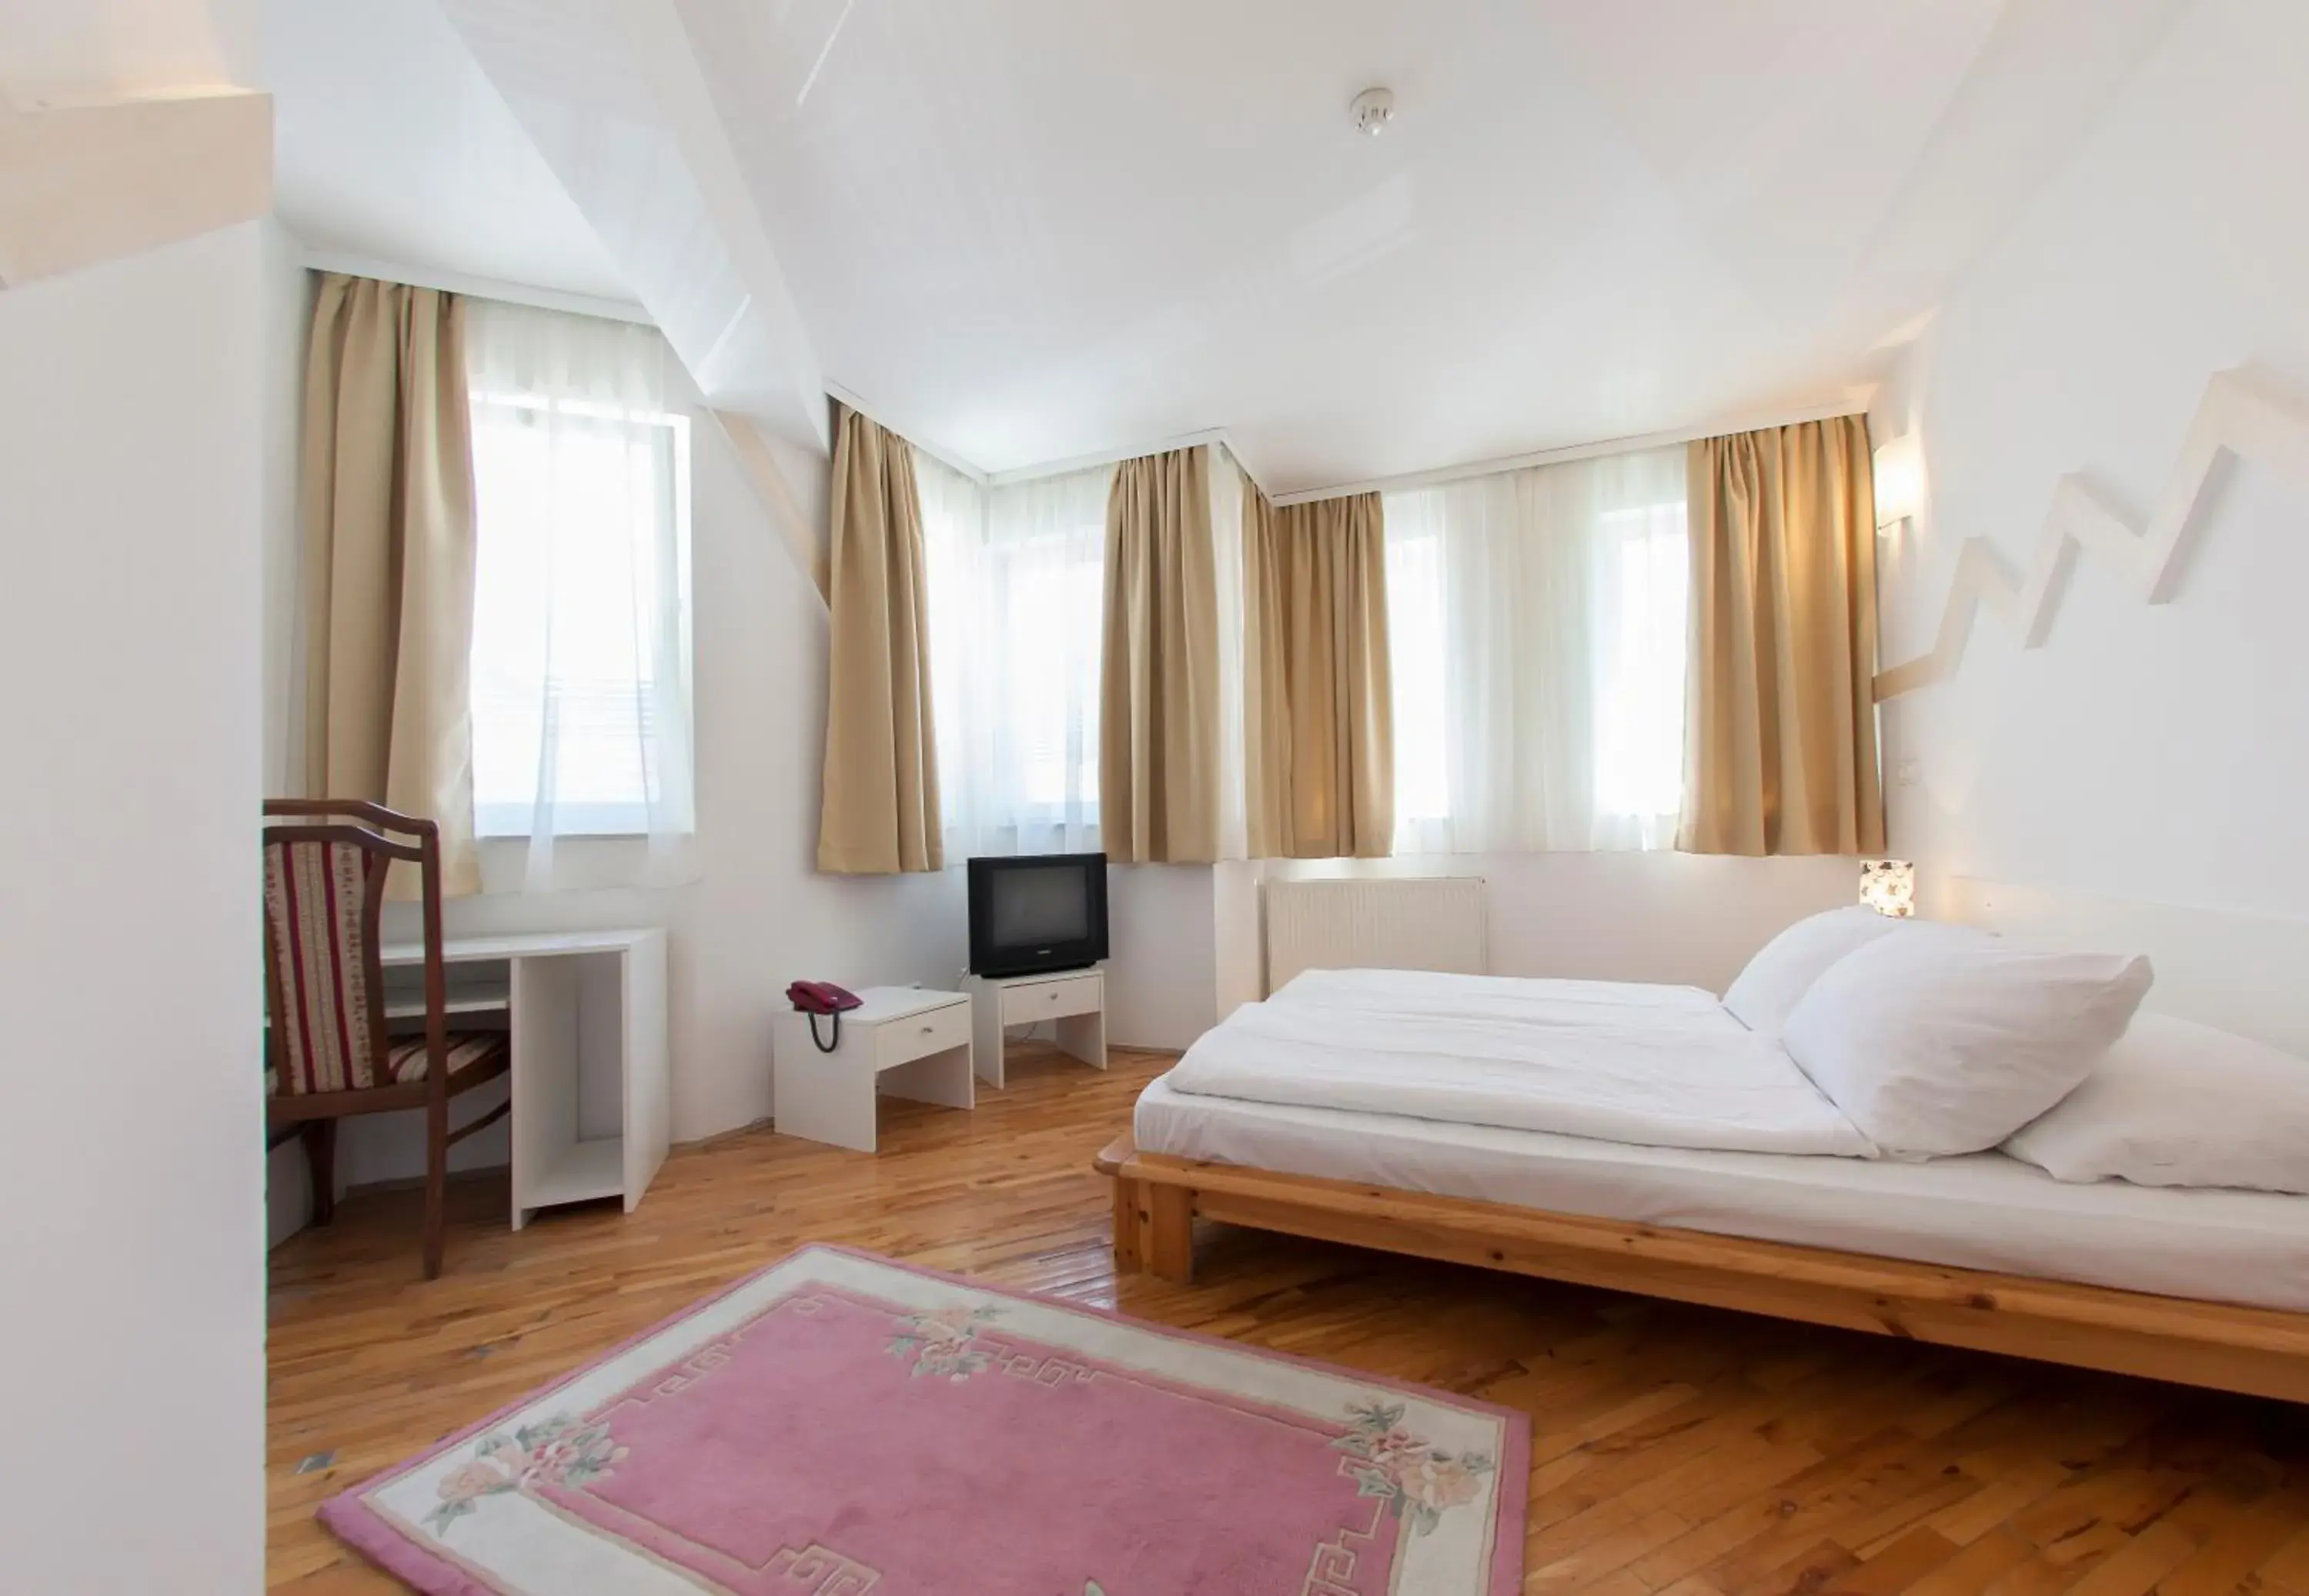 Bedroom, Room Photo in Hotel Hayat